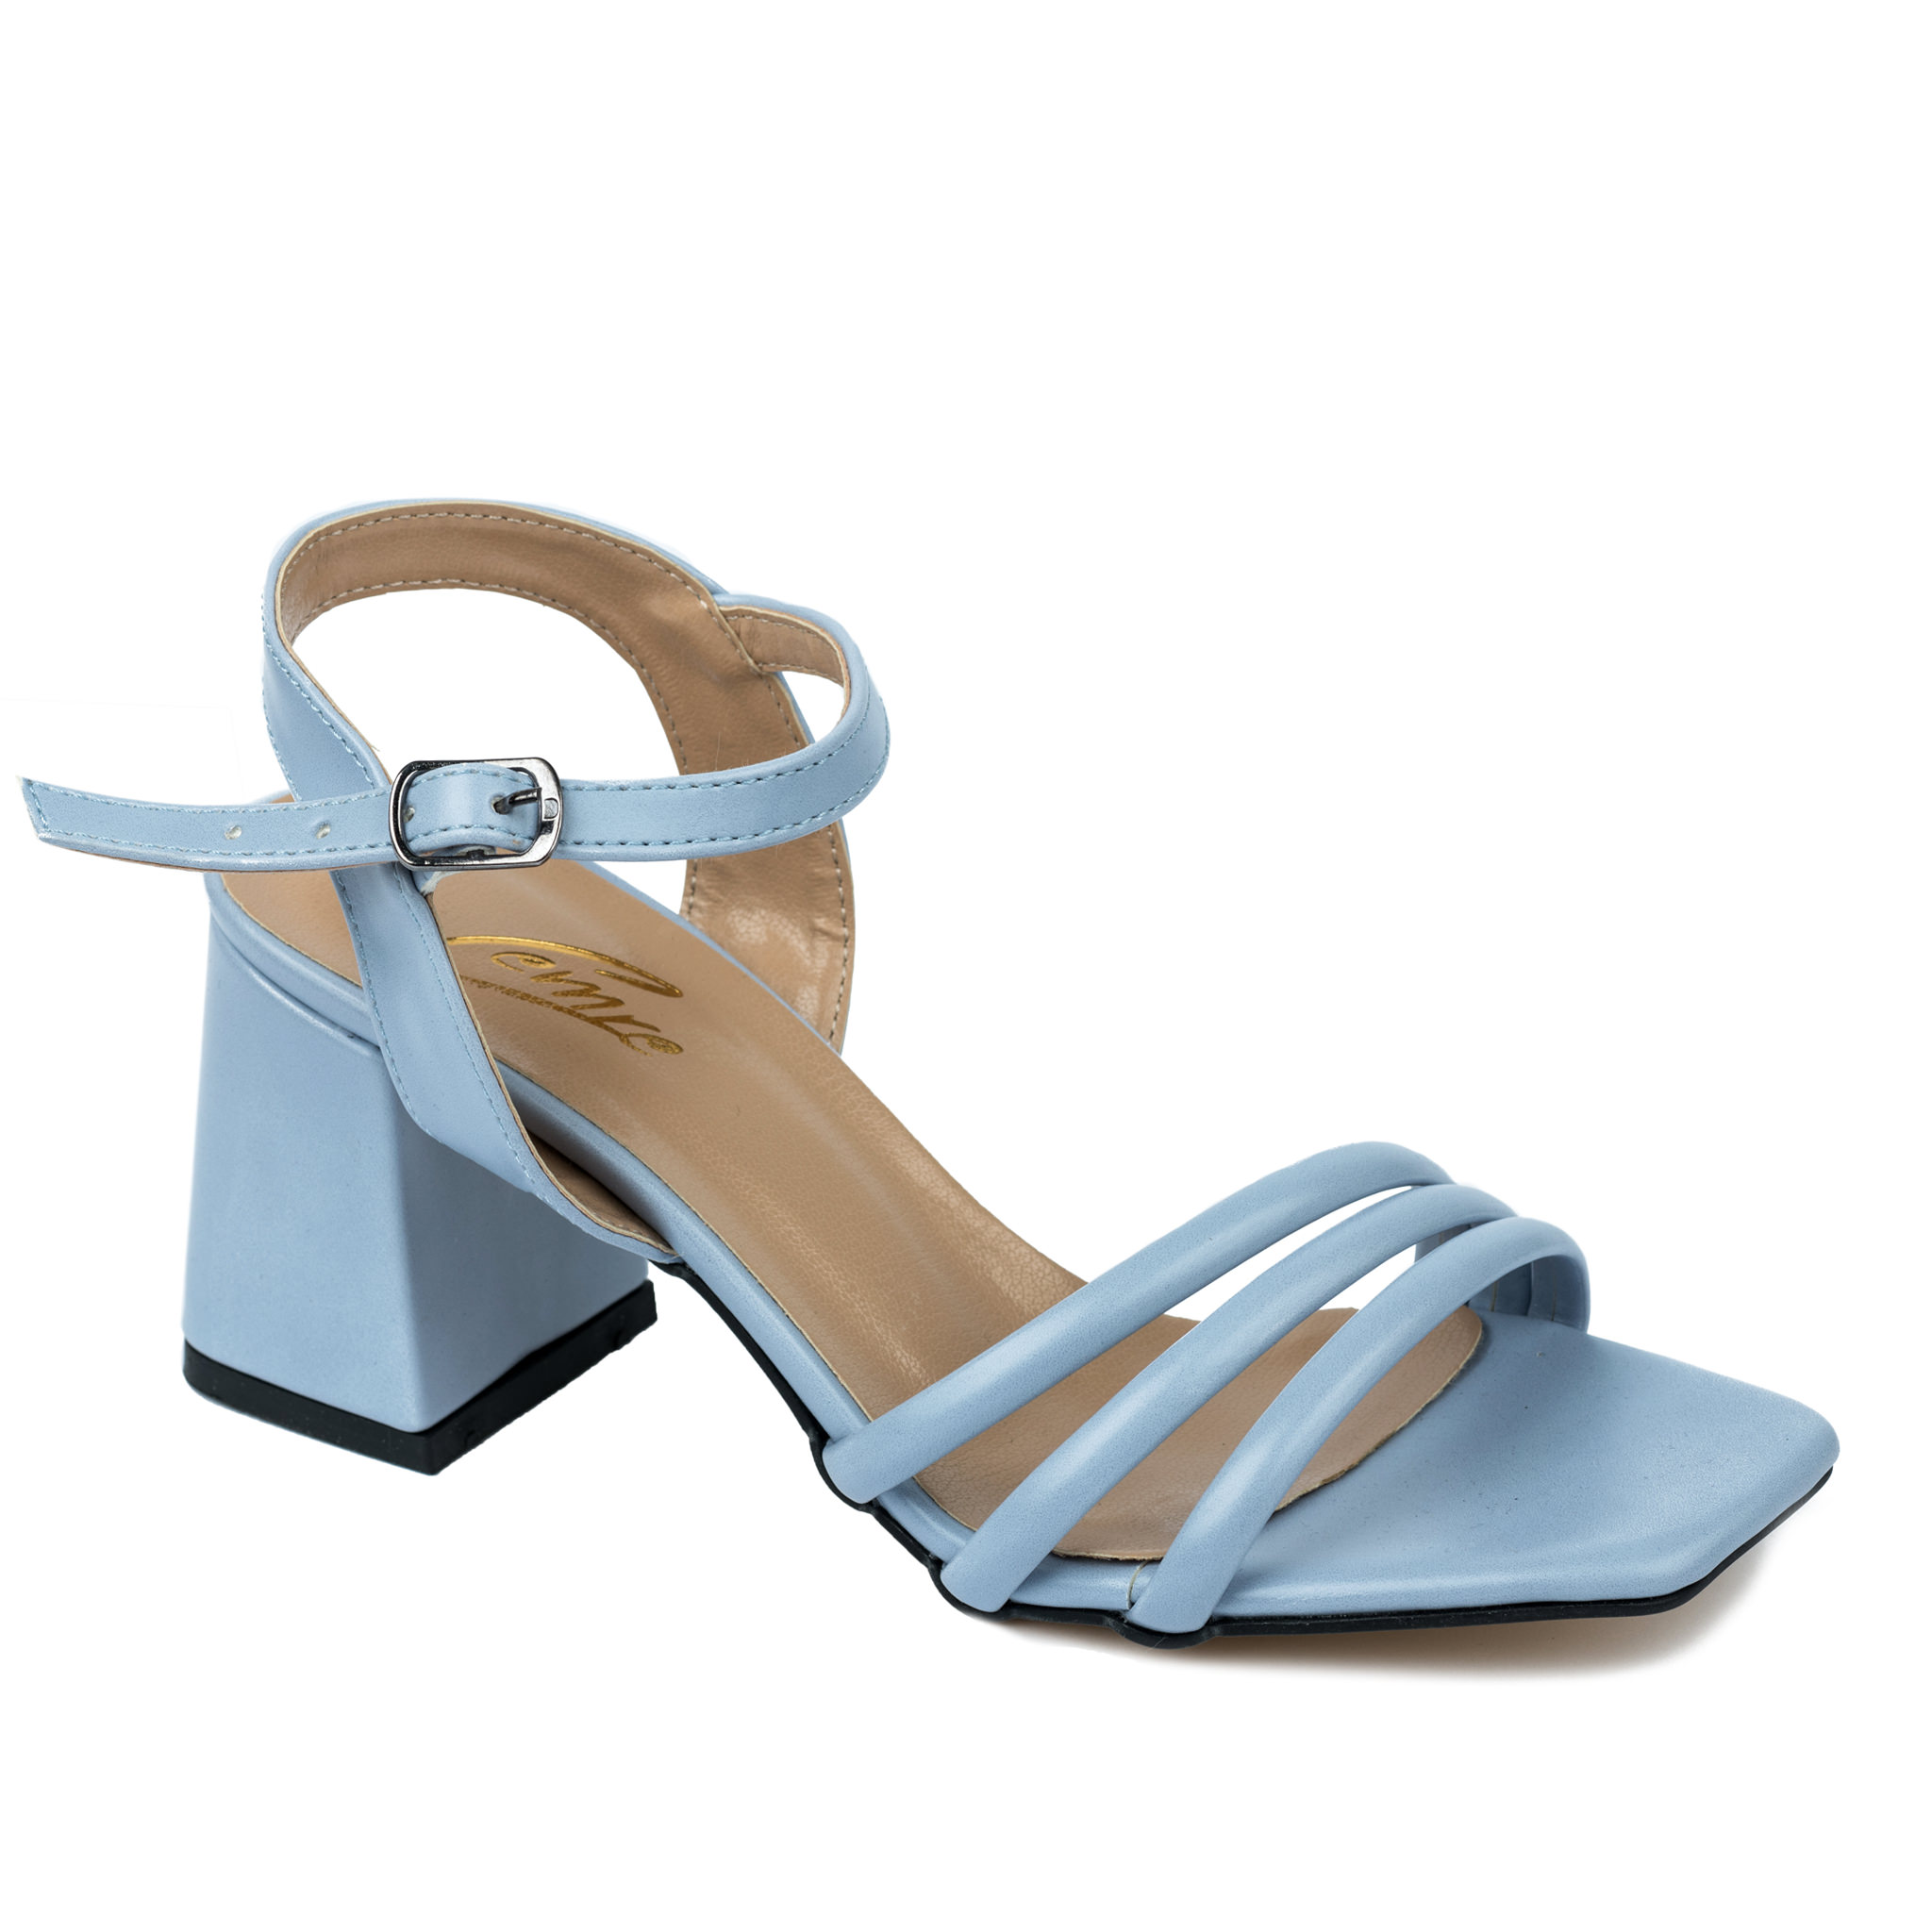 Women sandals A329 - BLUE